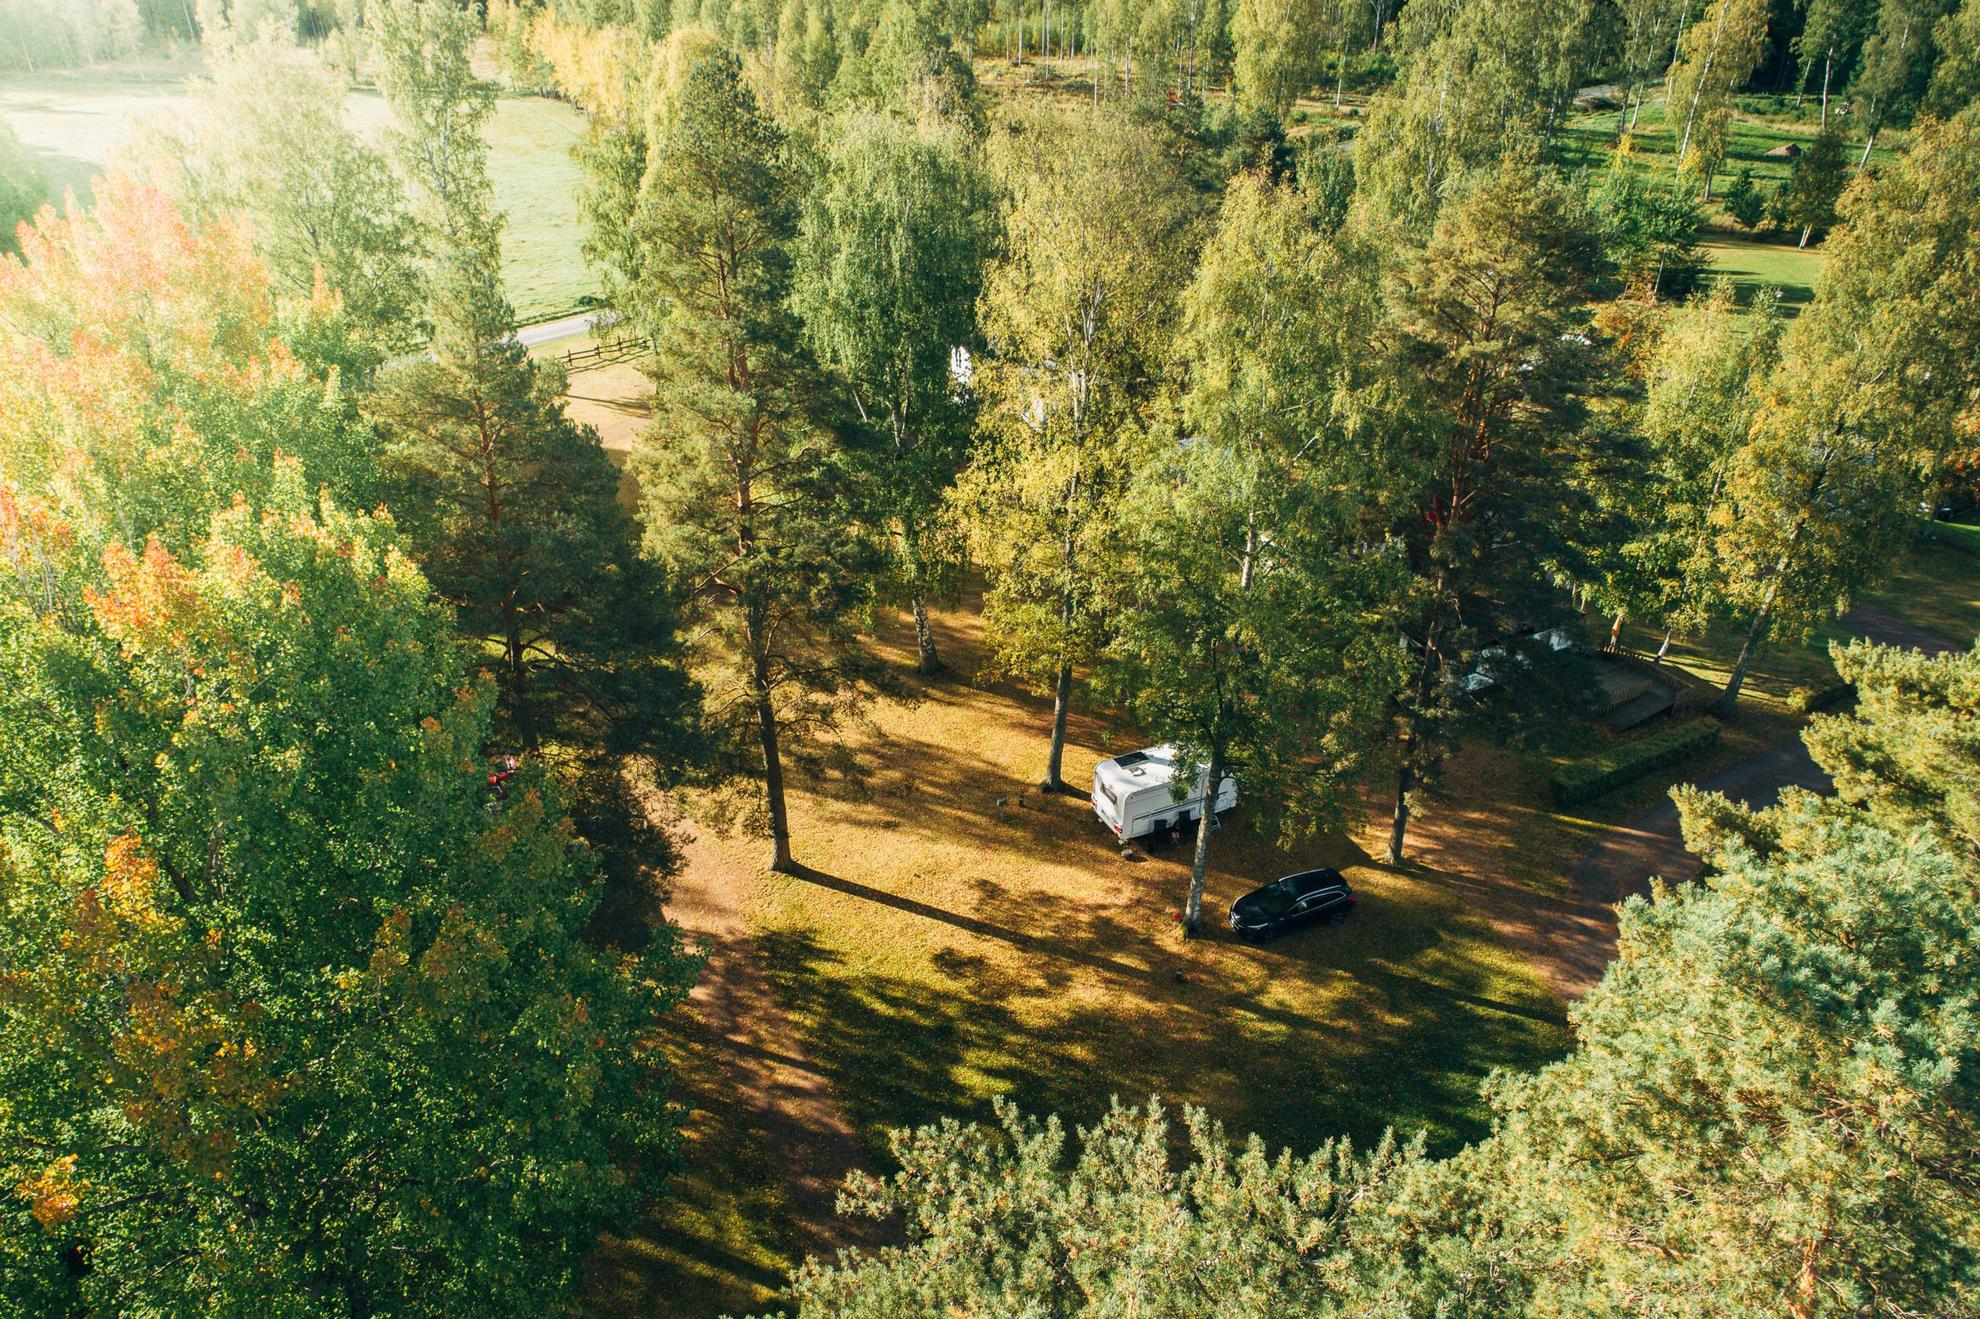 Luftaufnahme eines Wohnwagens und eines Autos auf einem Campingplatz in einem Wald.